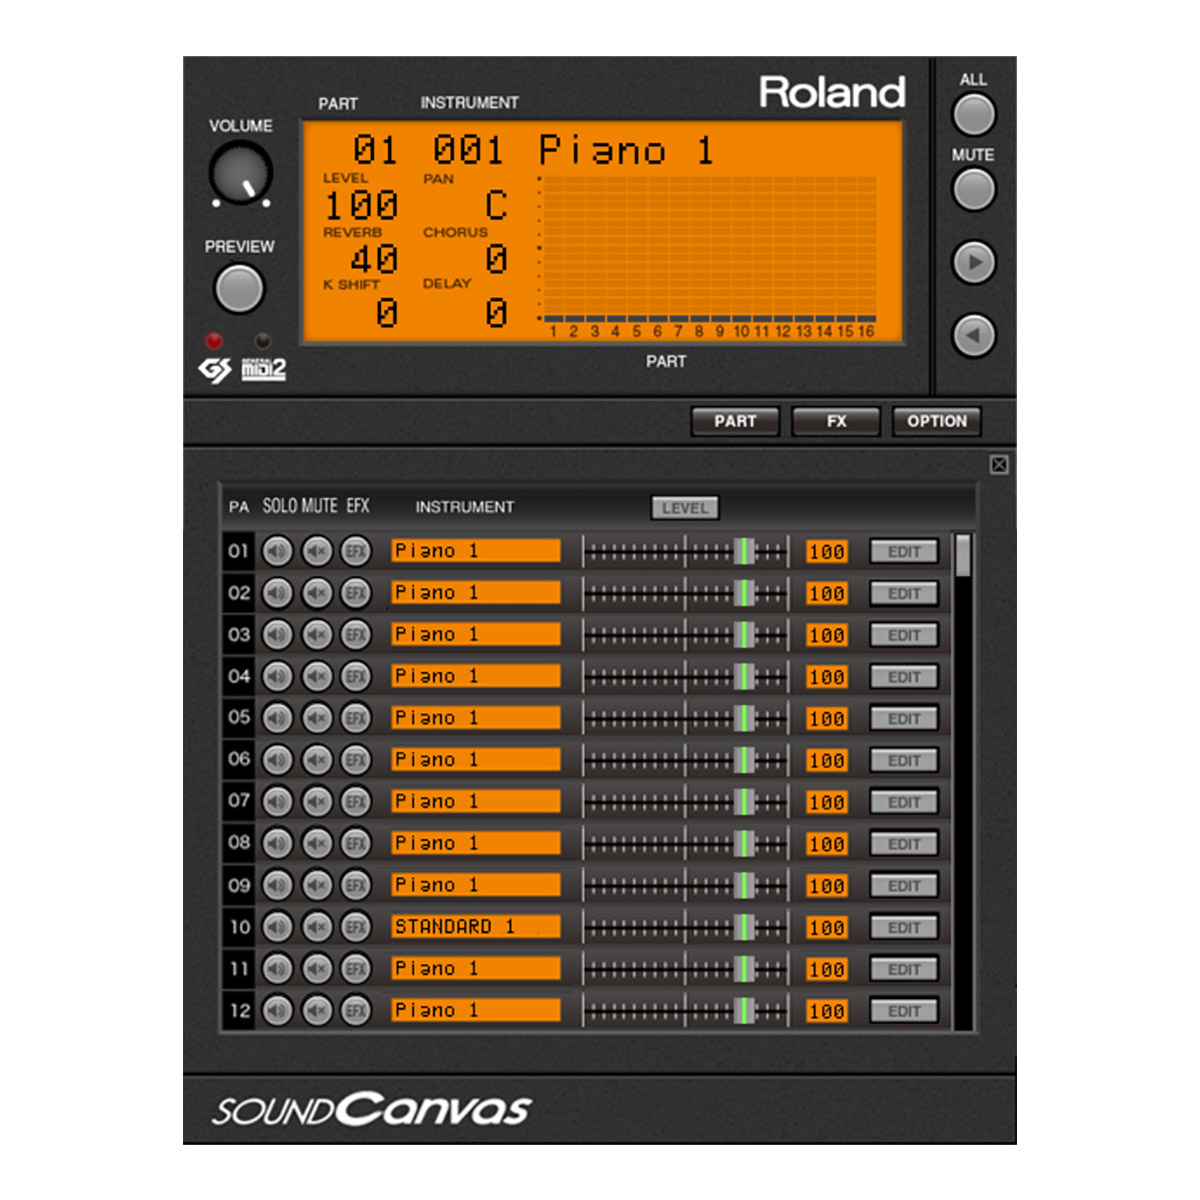 roland sound canvas va download free